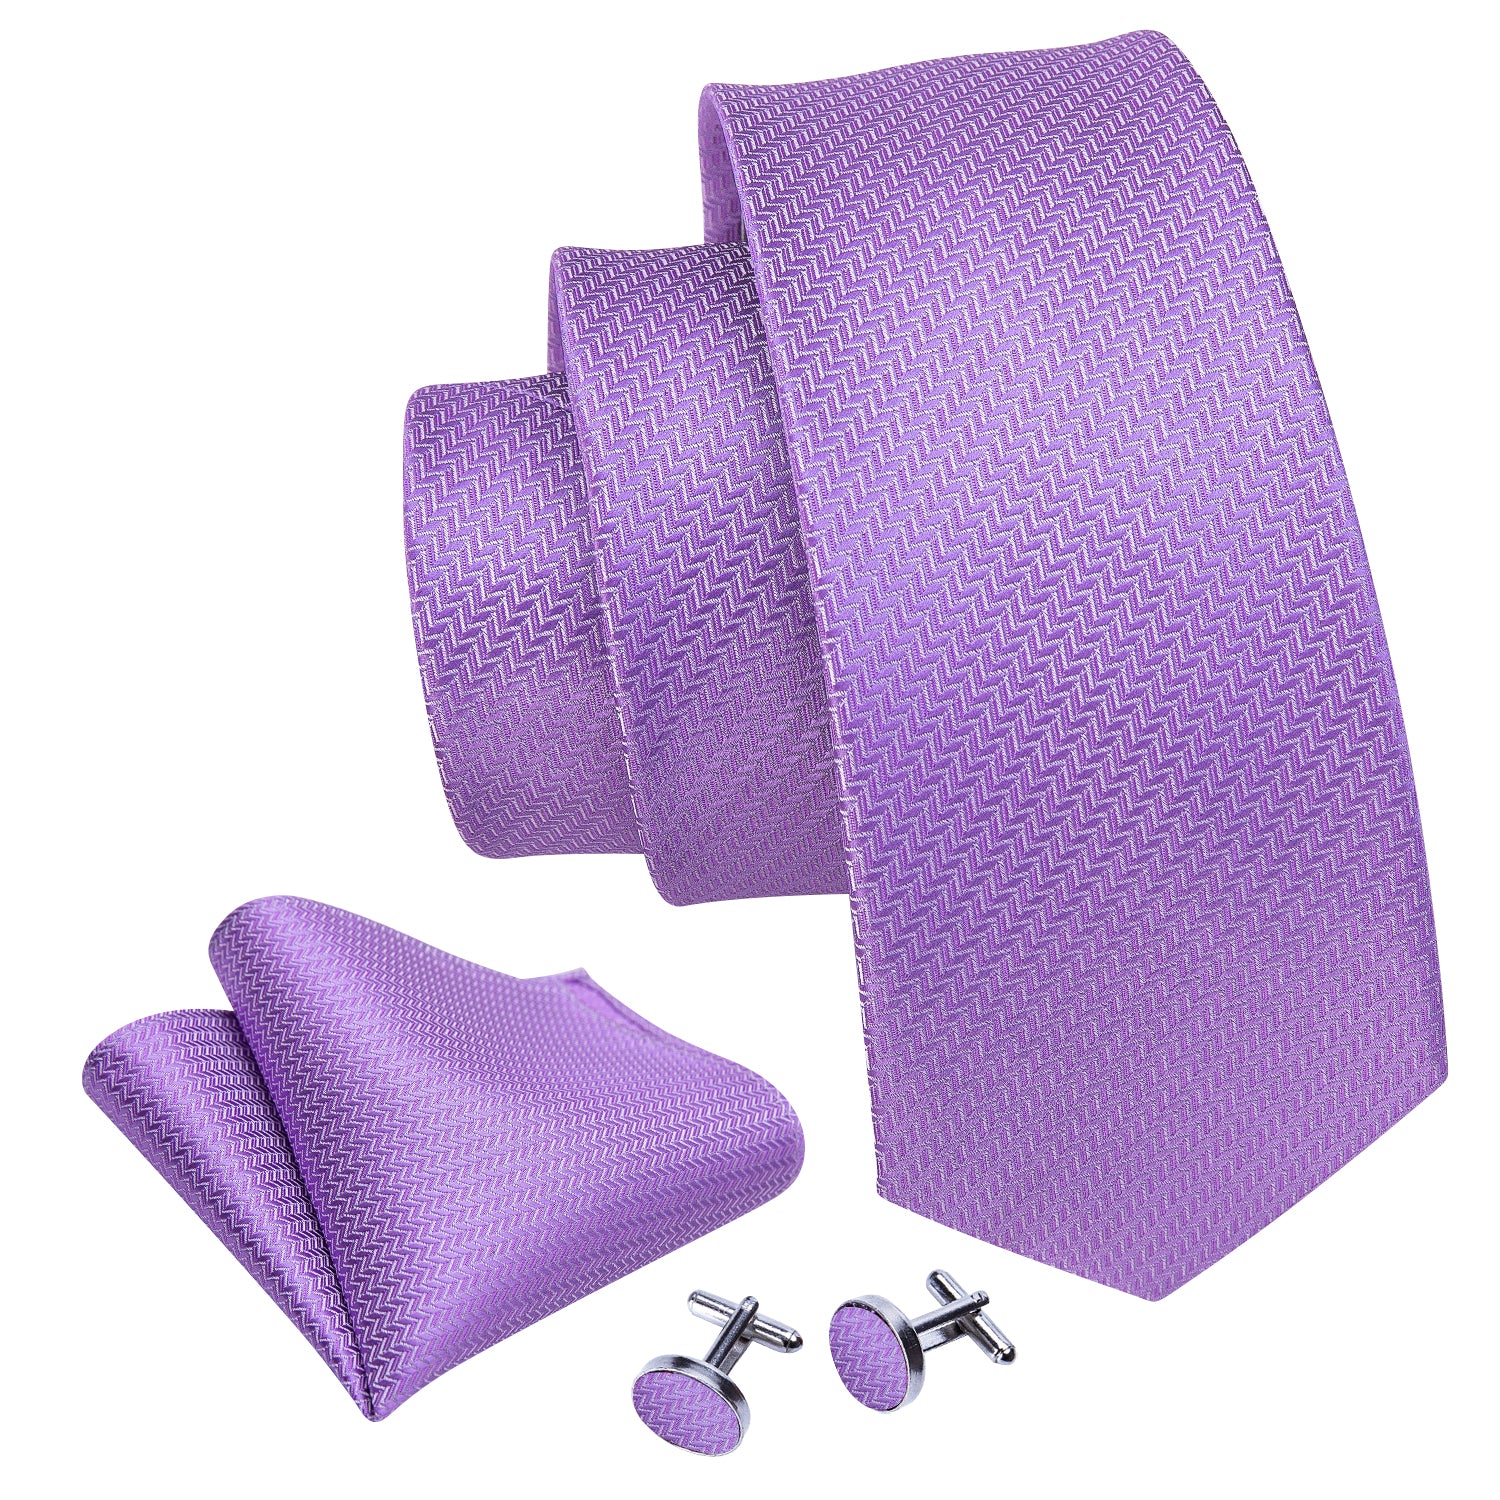 Barry.wang Purple Tie Striped Woven Silk Men's Tie Handkerchief Cufflinks set